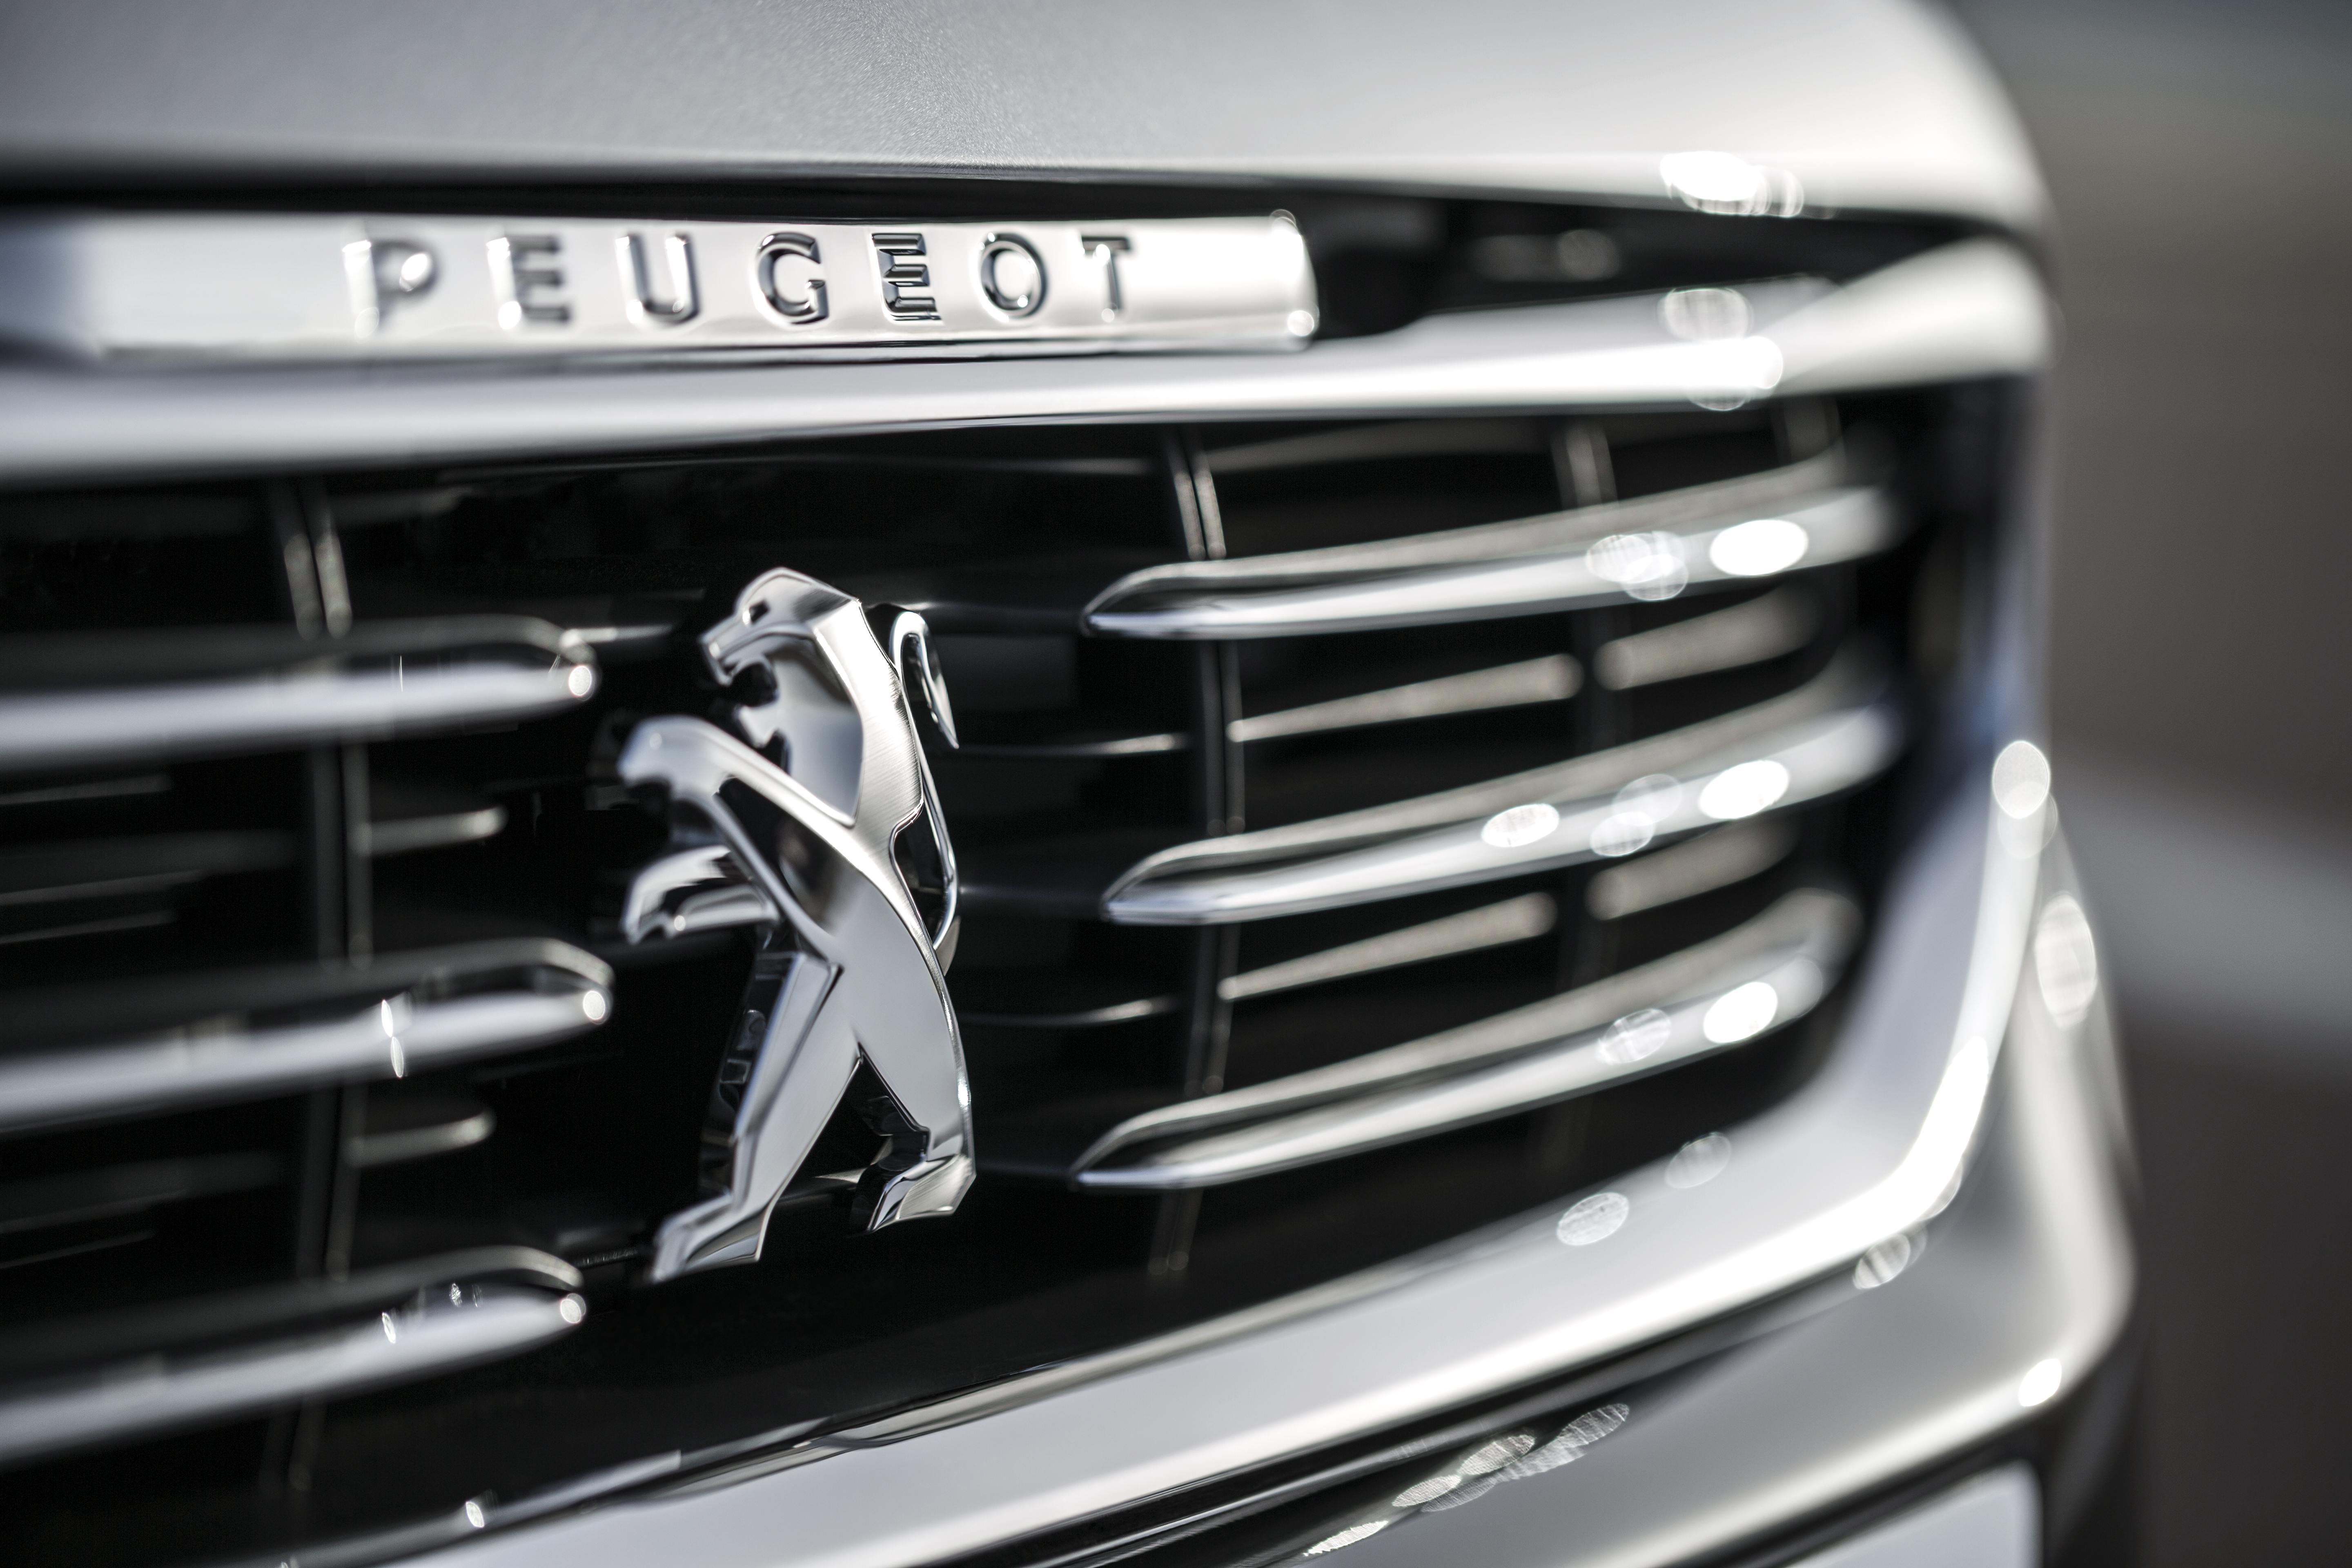 Peugeot имеет лучший имидж среди всех марок авто. Но пока только во Франции